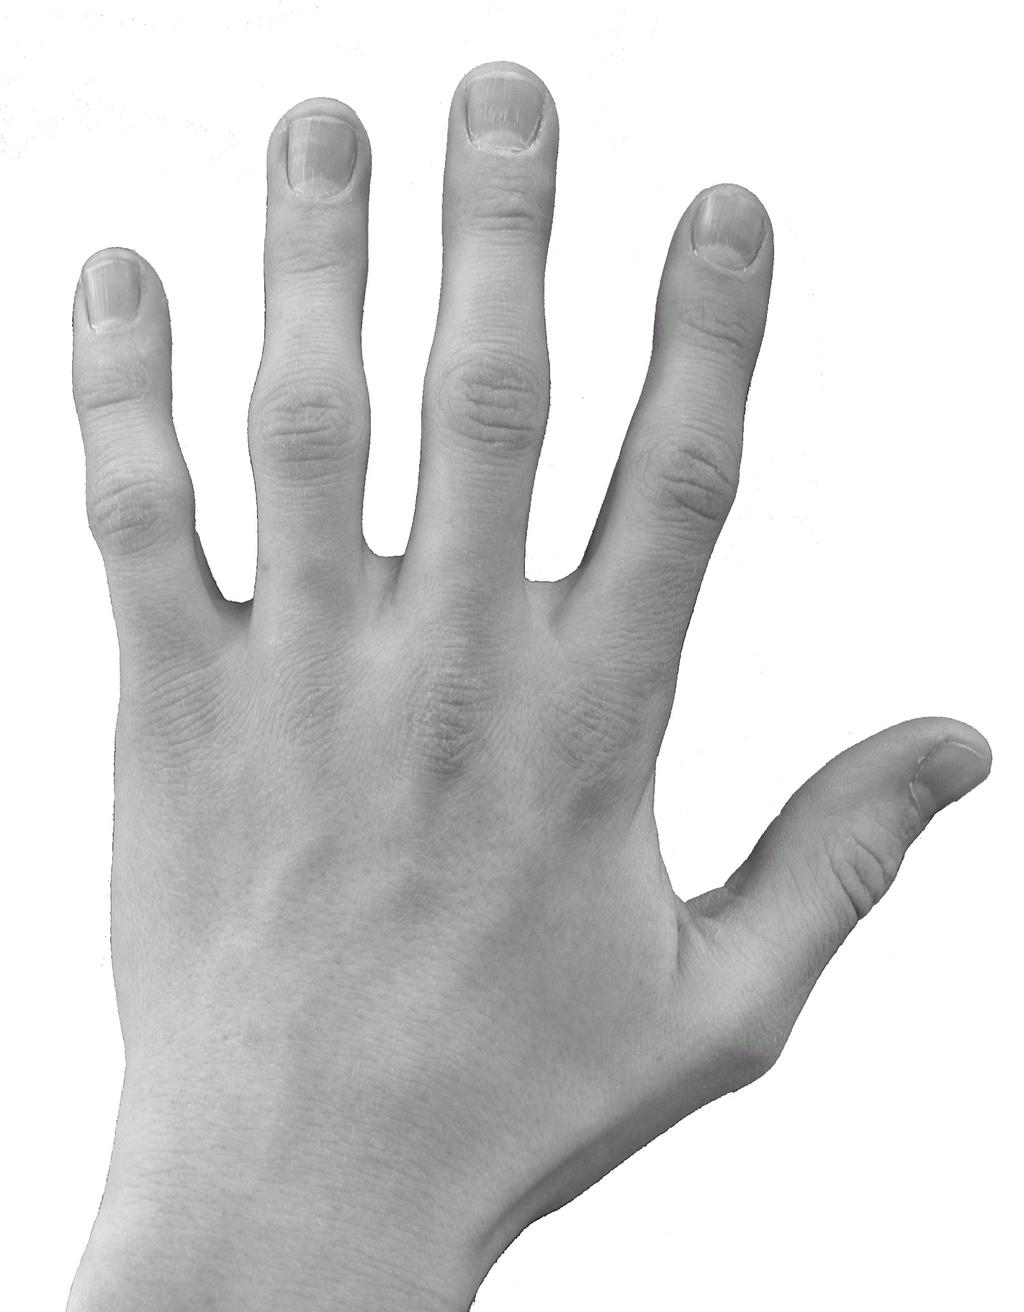 Jeder Finger hat seine Nummer 4 3 2 1 1 2 3 4 Die Finger der linken Hand werden mit den Zahlen 1 bis 4